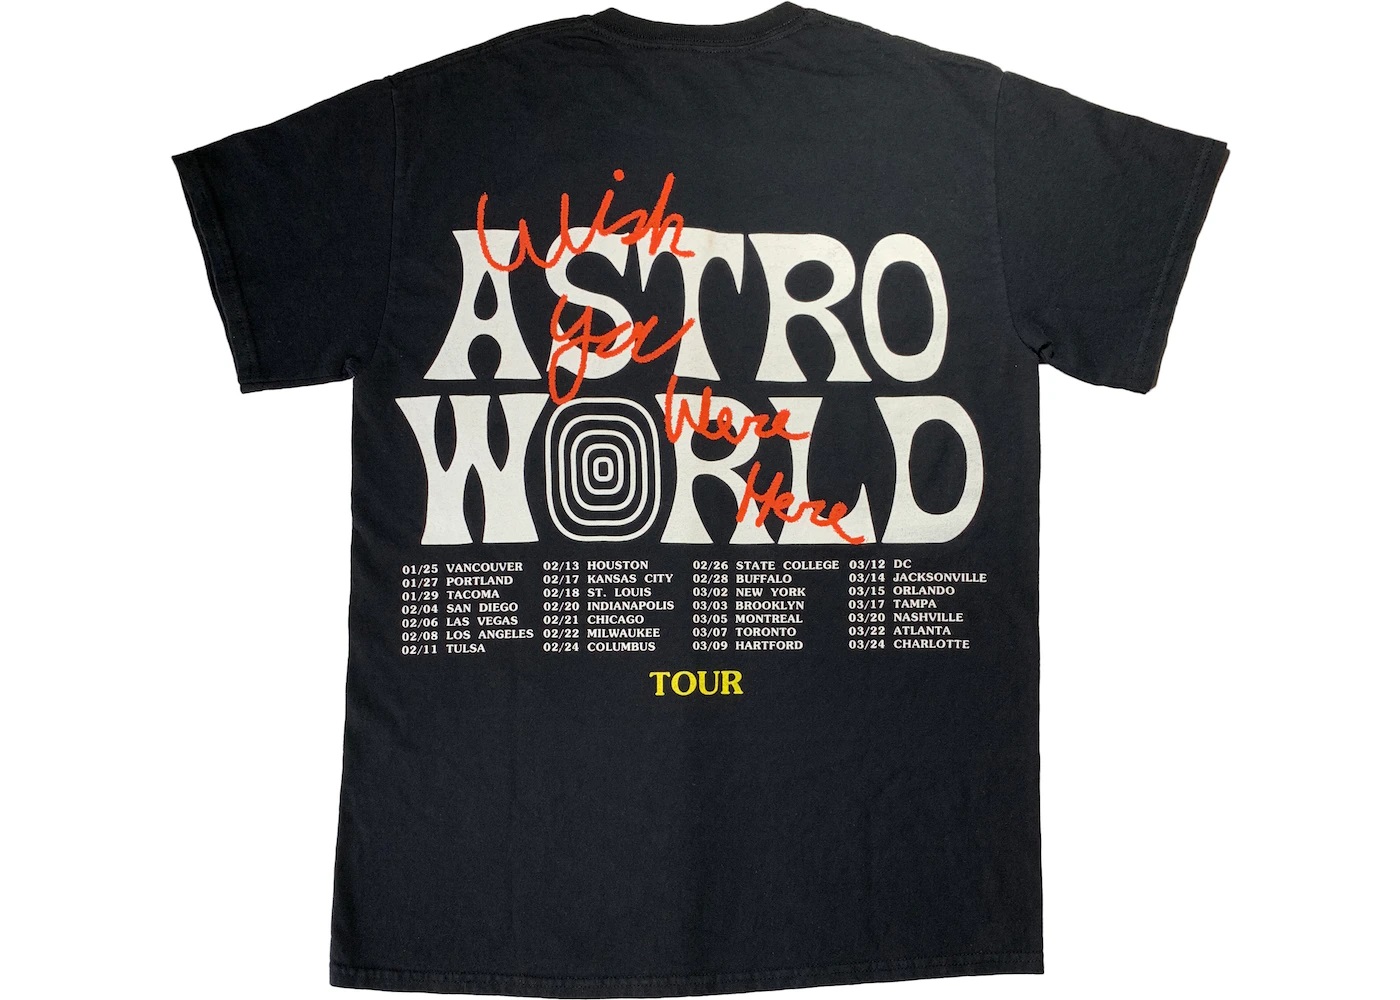 Travis Scott Astroworld Tour Wish You Were Here Tee Black